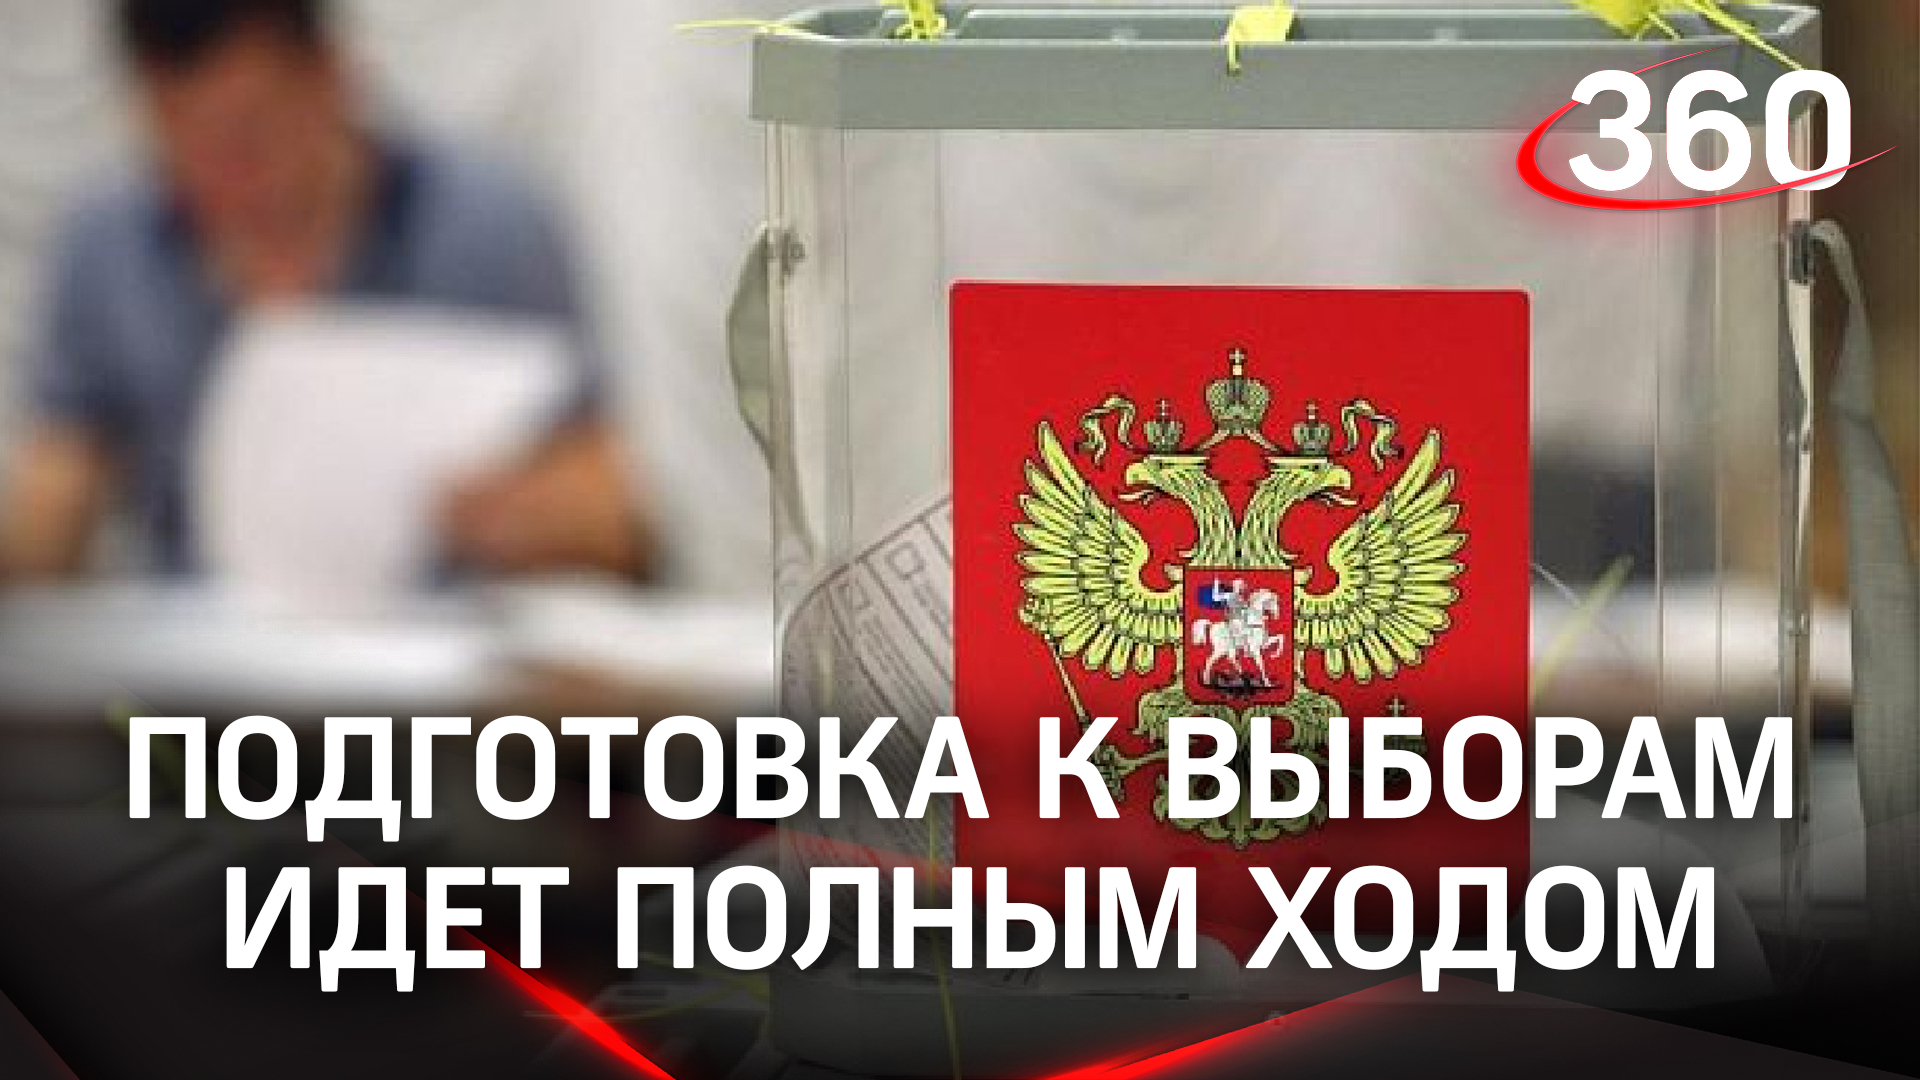 Кандидаты на пост губернатора Подмосковья определены. Подготовка к выборам идёт полным ходом